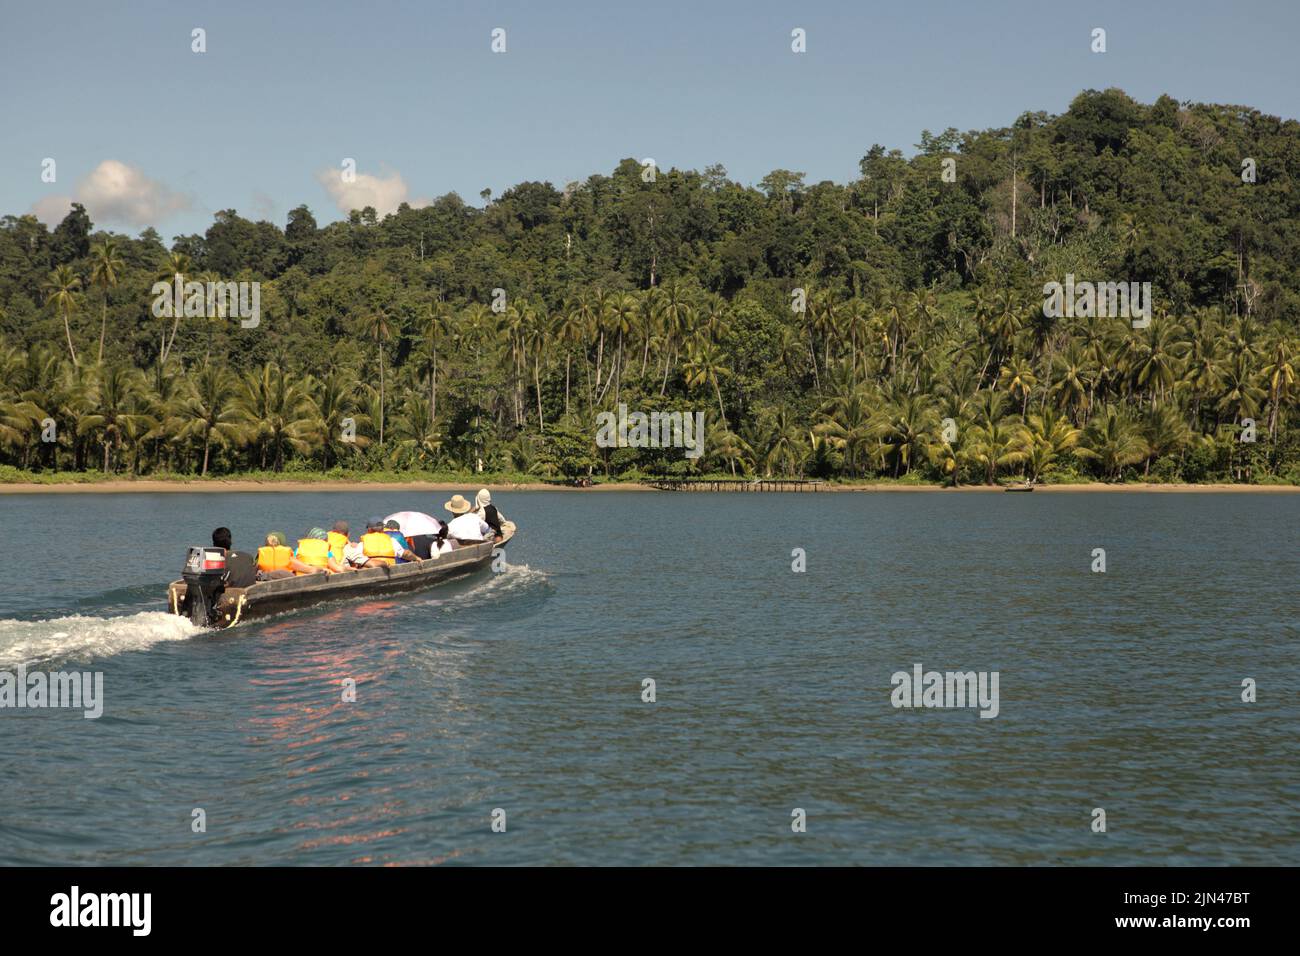 Una barca che trasporta i turisti sta navigando sull'acqua al largo della costa dell'isola di Seram, vicino al villaggio morale in Seram Utara Barat, Maluku Tengah, Maluku, Indonesia. Foto Stock